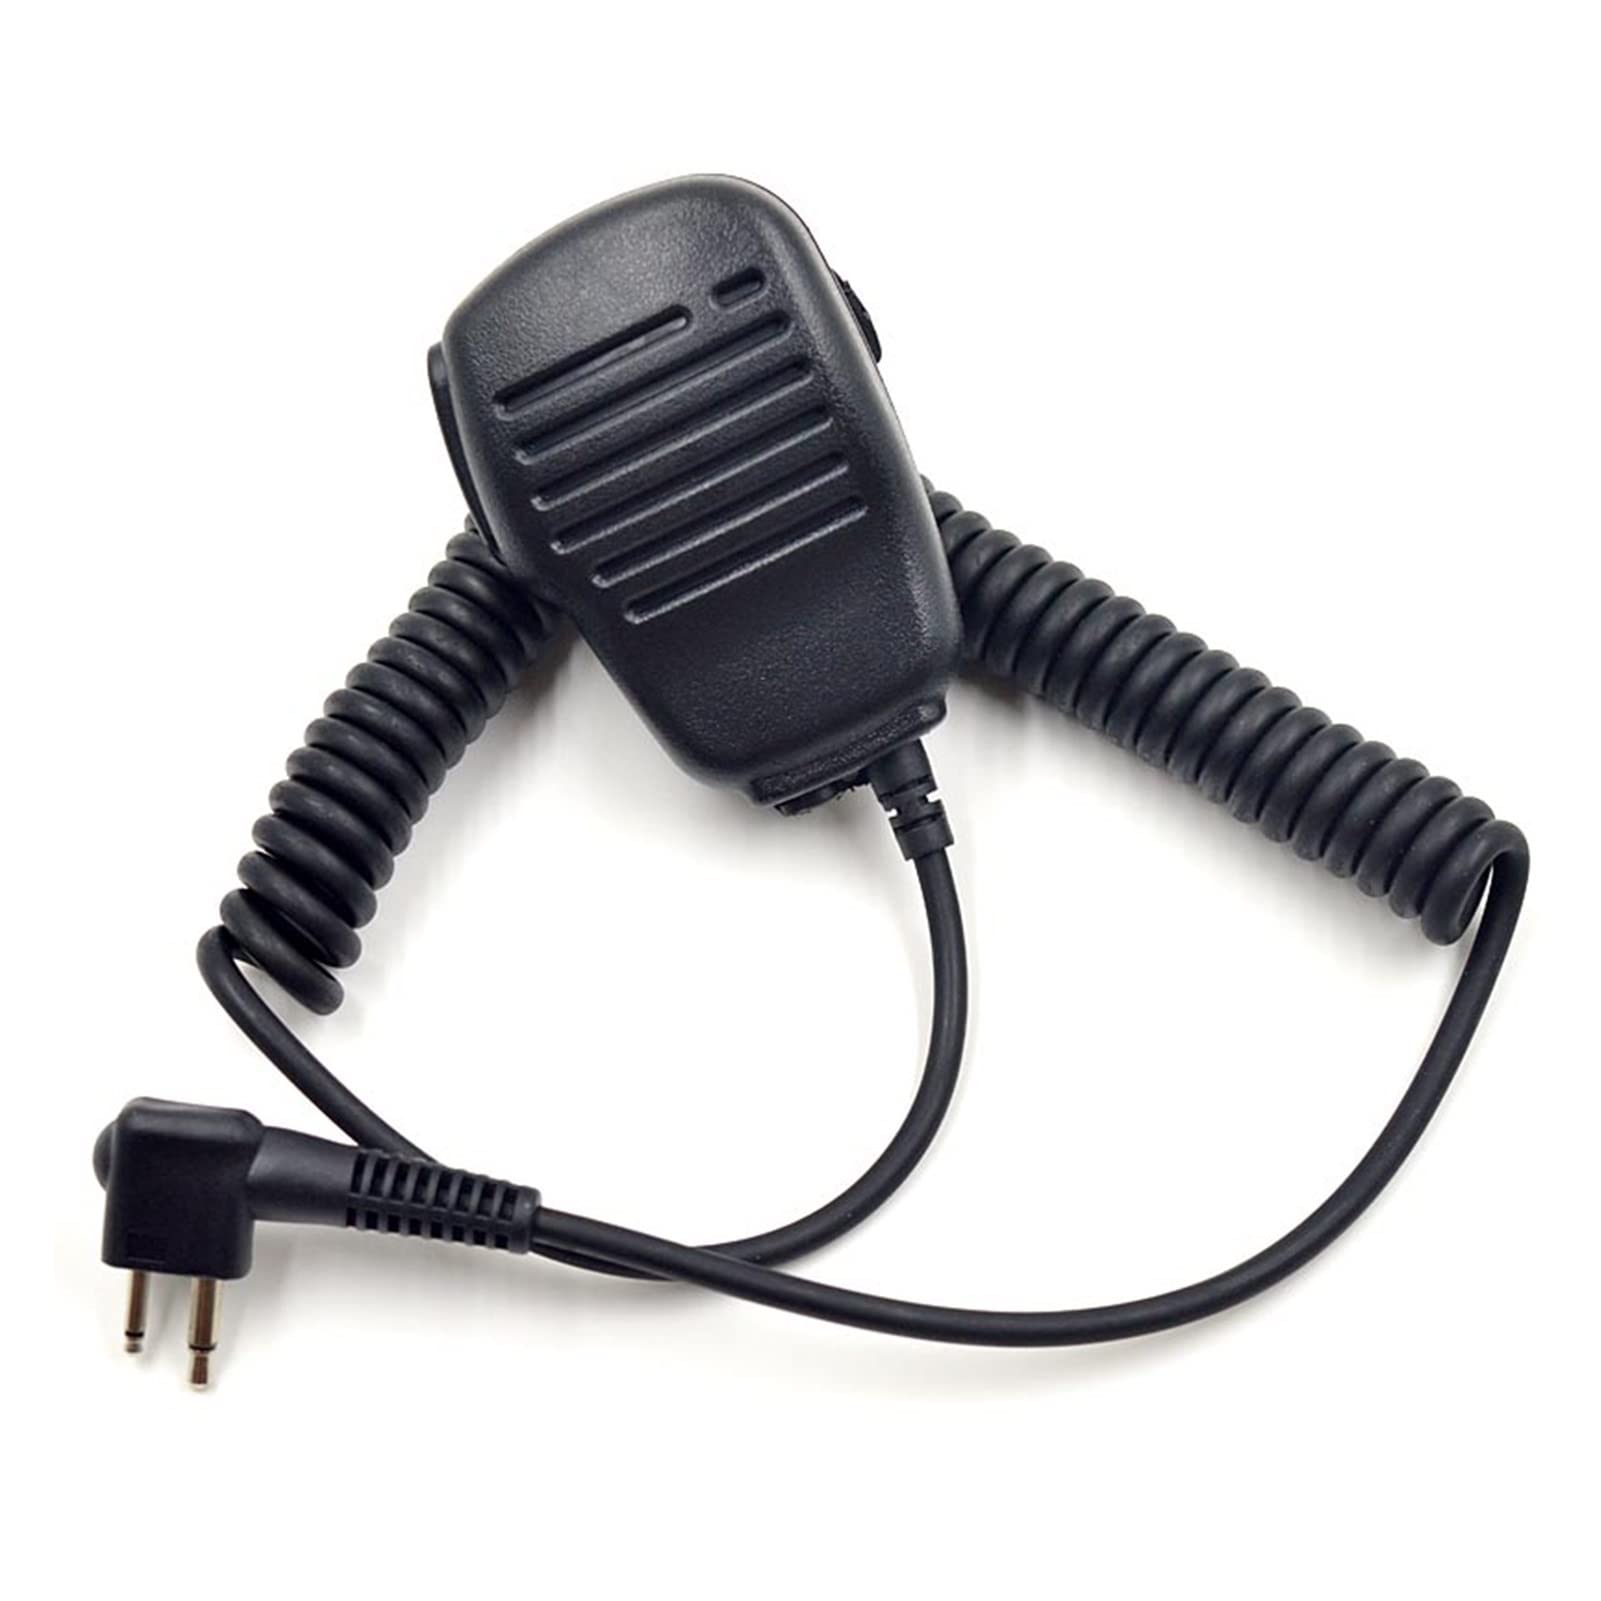 ARSMI 2-Pin-Handheld-Lautsprecher-Mikrofonmikrofon Ptt Walkie Talkie CP040 CP200 EP450 CP300 CLS1410 Tragbares Funkmikat for Motorola Walkie-Talkie-Mikrofon